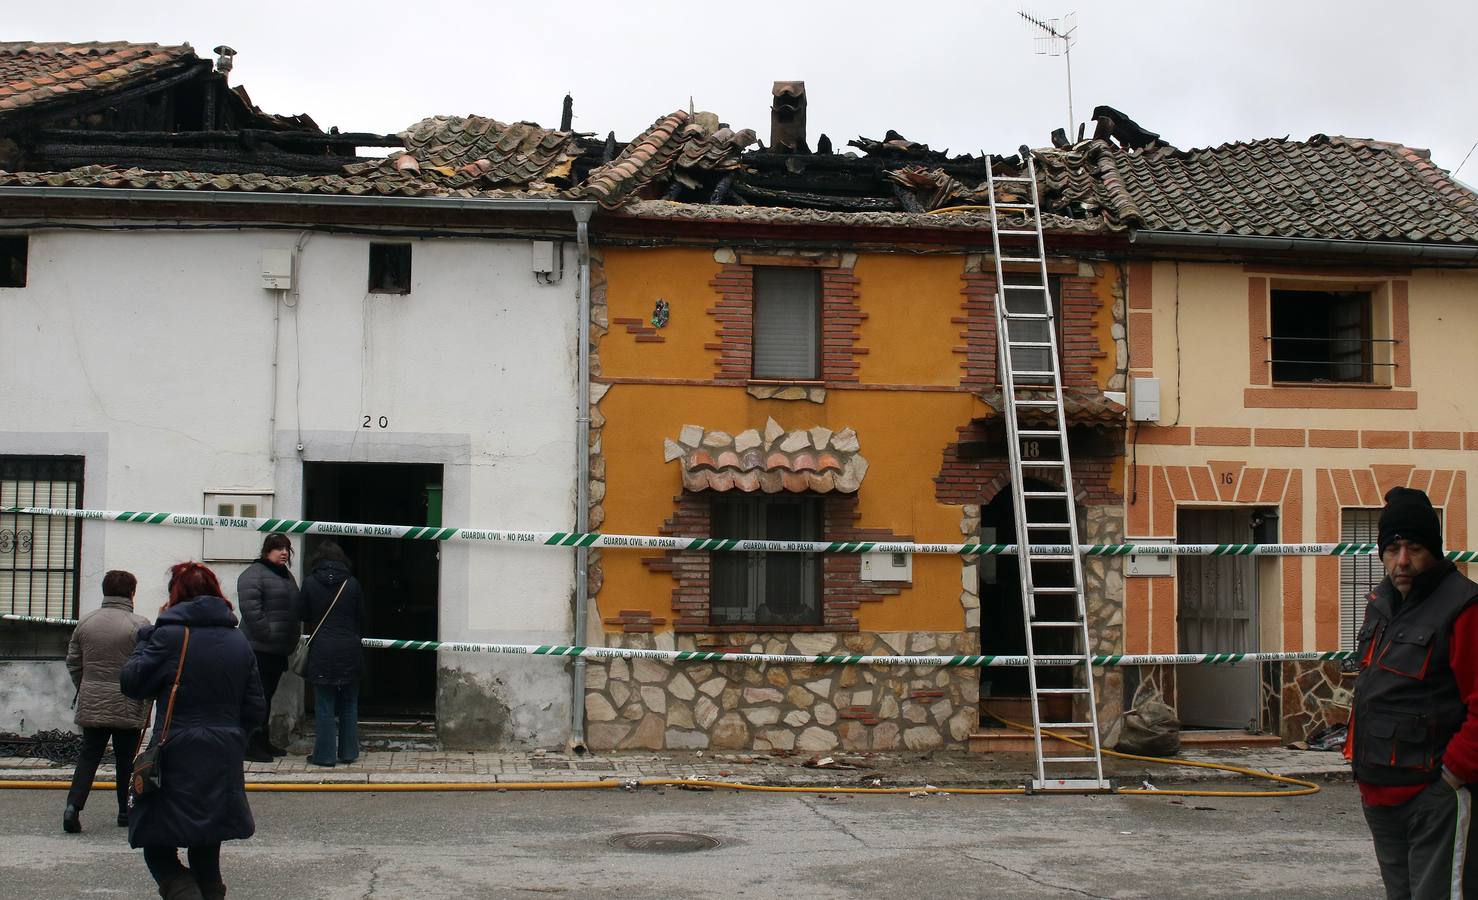 La alcaldesa de Sauquillo de Cabezas, María del Carmen Bermejo, relata cómo su hijo ha logrado salir por su propio pie de madrugada de su vivienda, que ha quedado devorada por el incendio